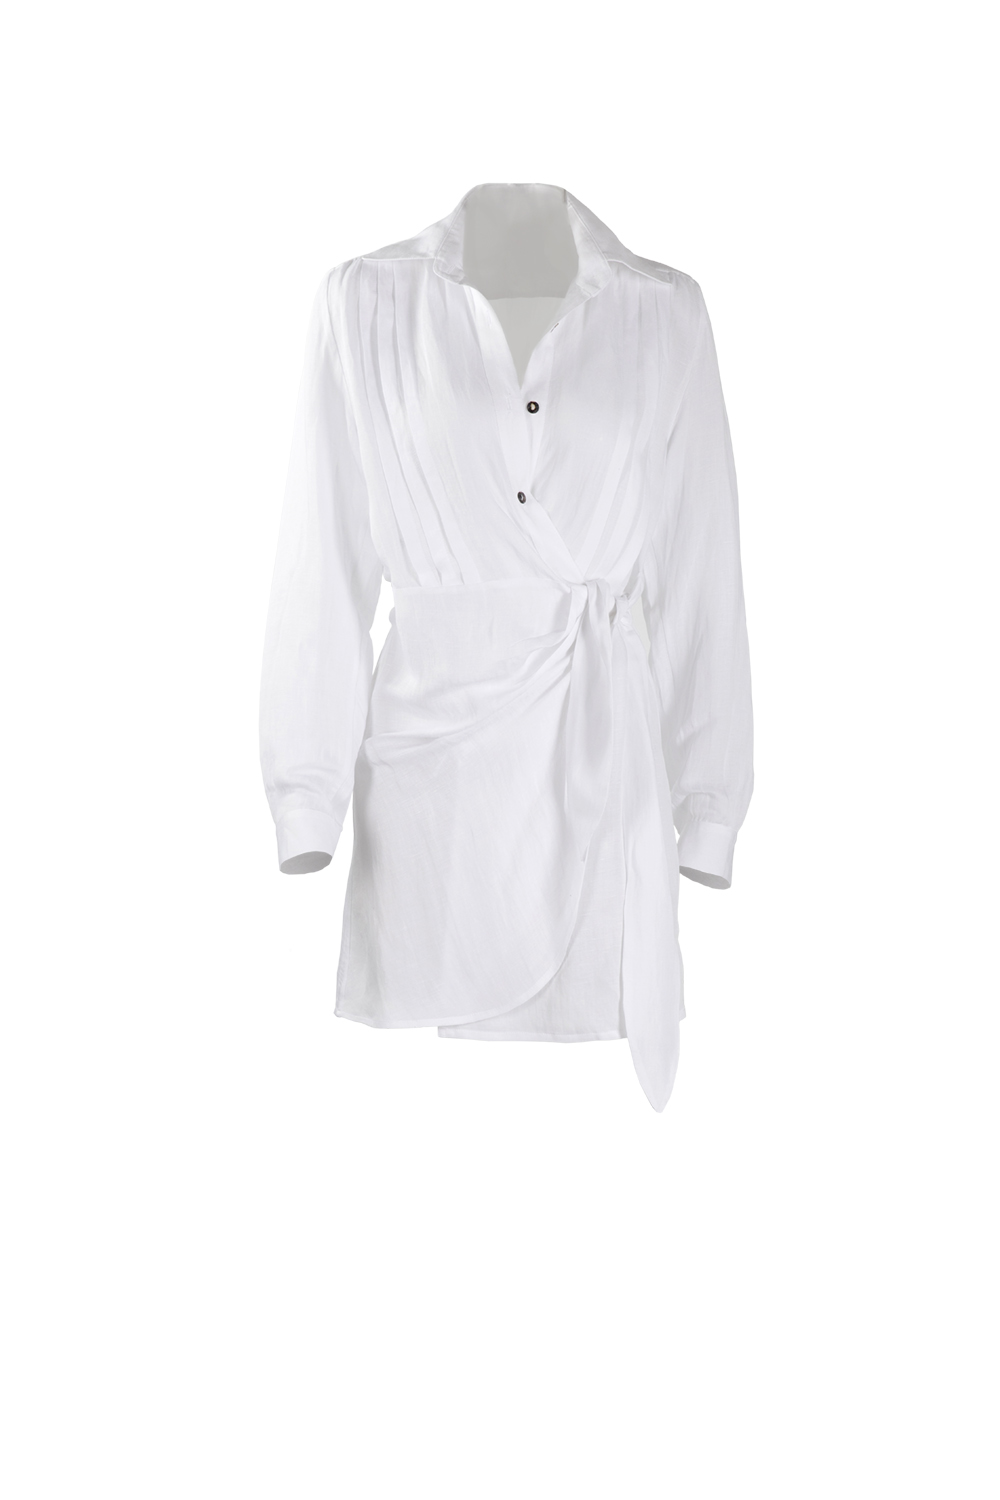 Backless Short linen Shirt-Dress » Bardash Shop